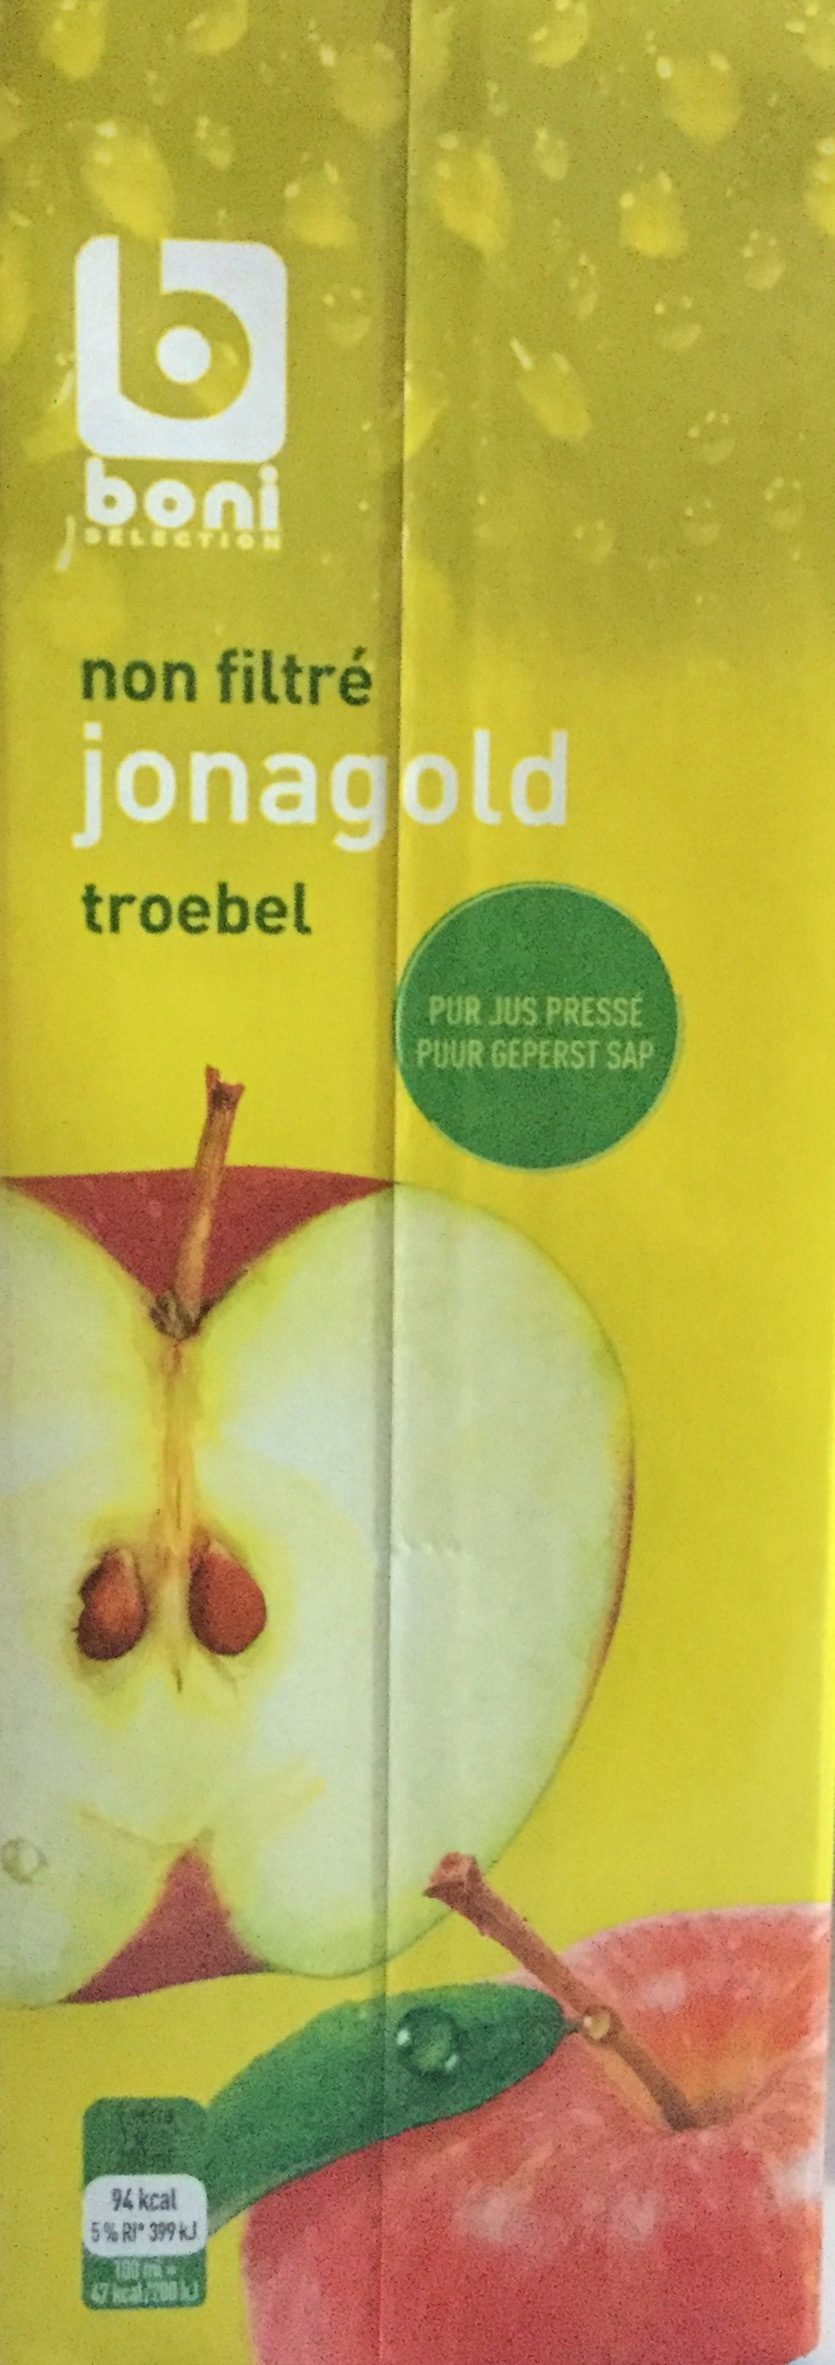 Jus de pommes jonagold - Produit